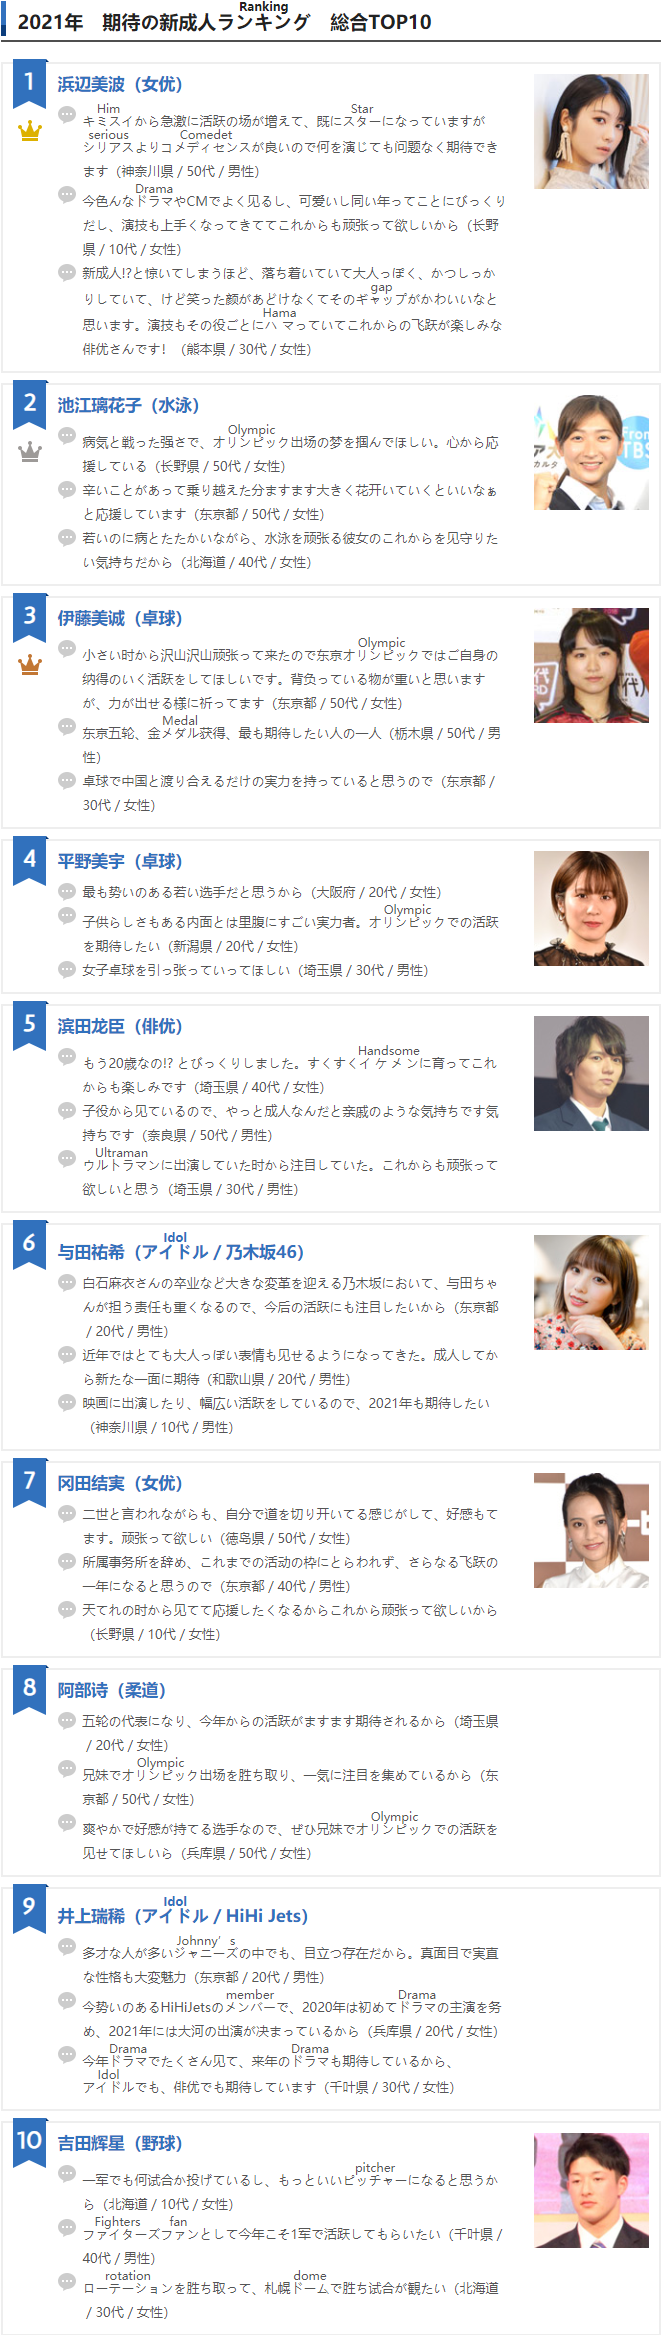 日本公信榜ORICON票选“2021年备受期待的新成人排行榜”Top10，浜辺美波获得榜首！_图片 No.13